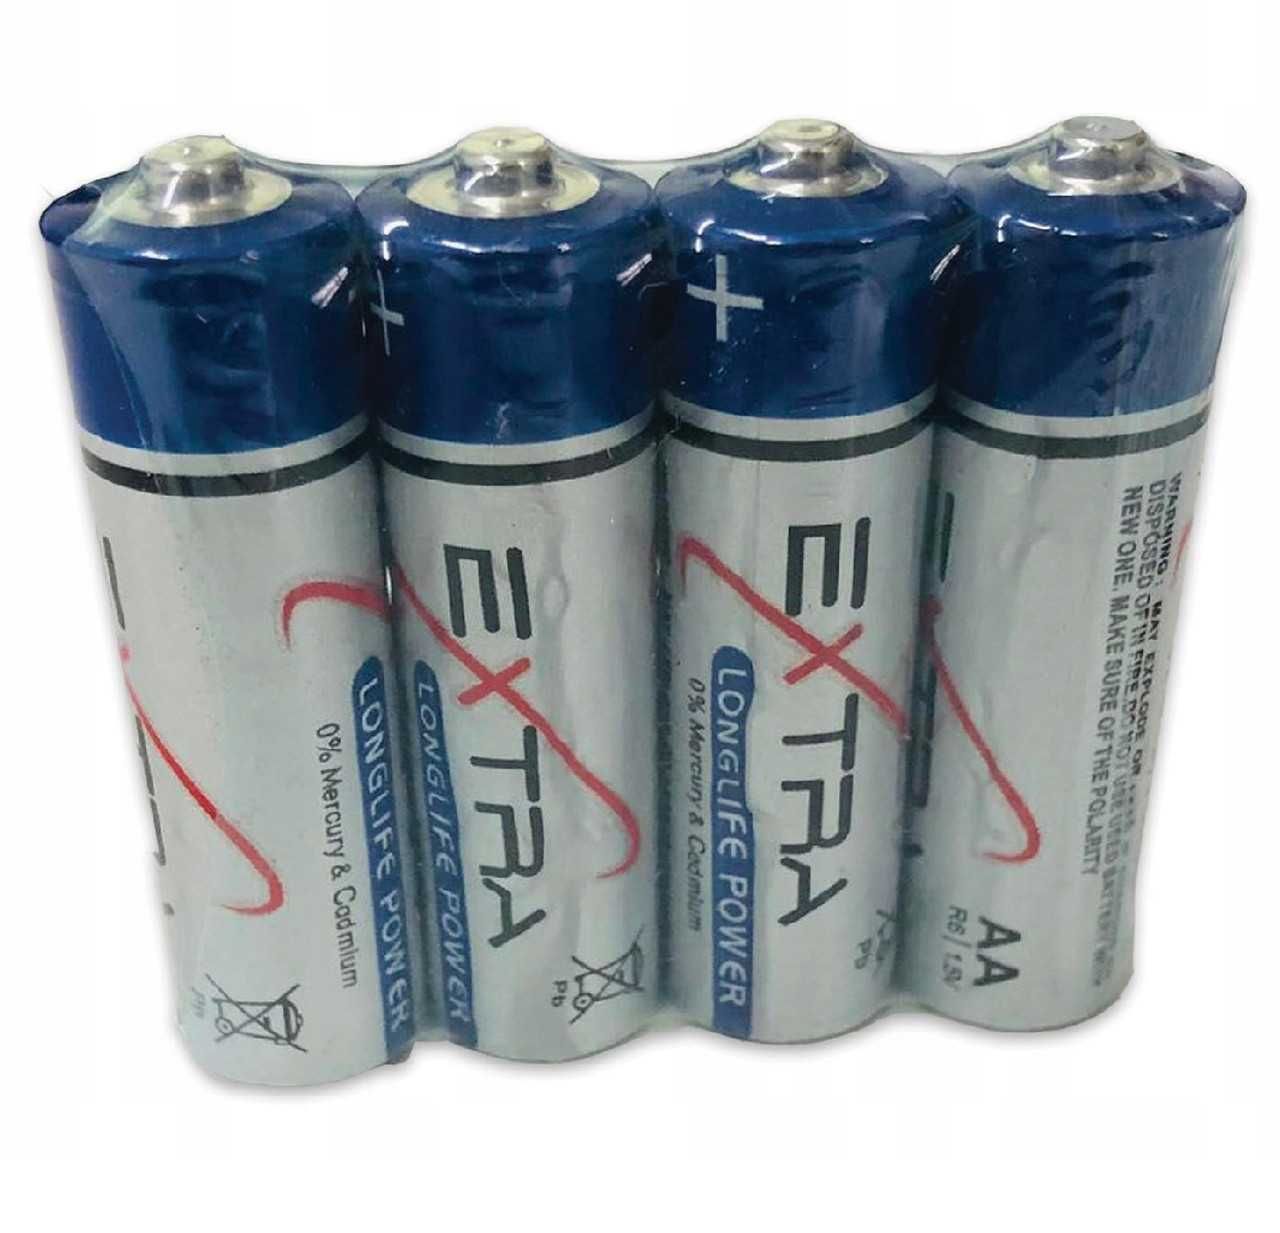 Батареи Батарейки Пальчиковые АА Новые Недорого Упаковка 60шт